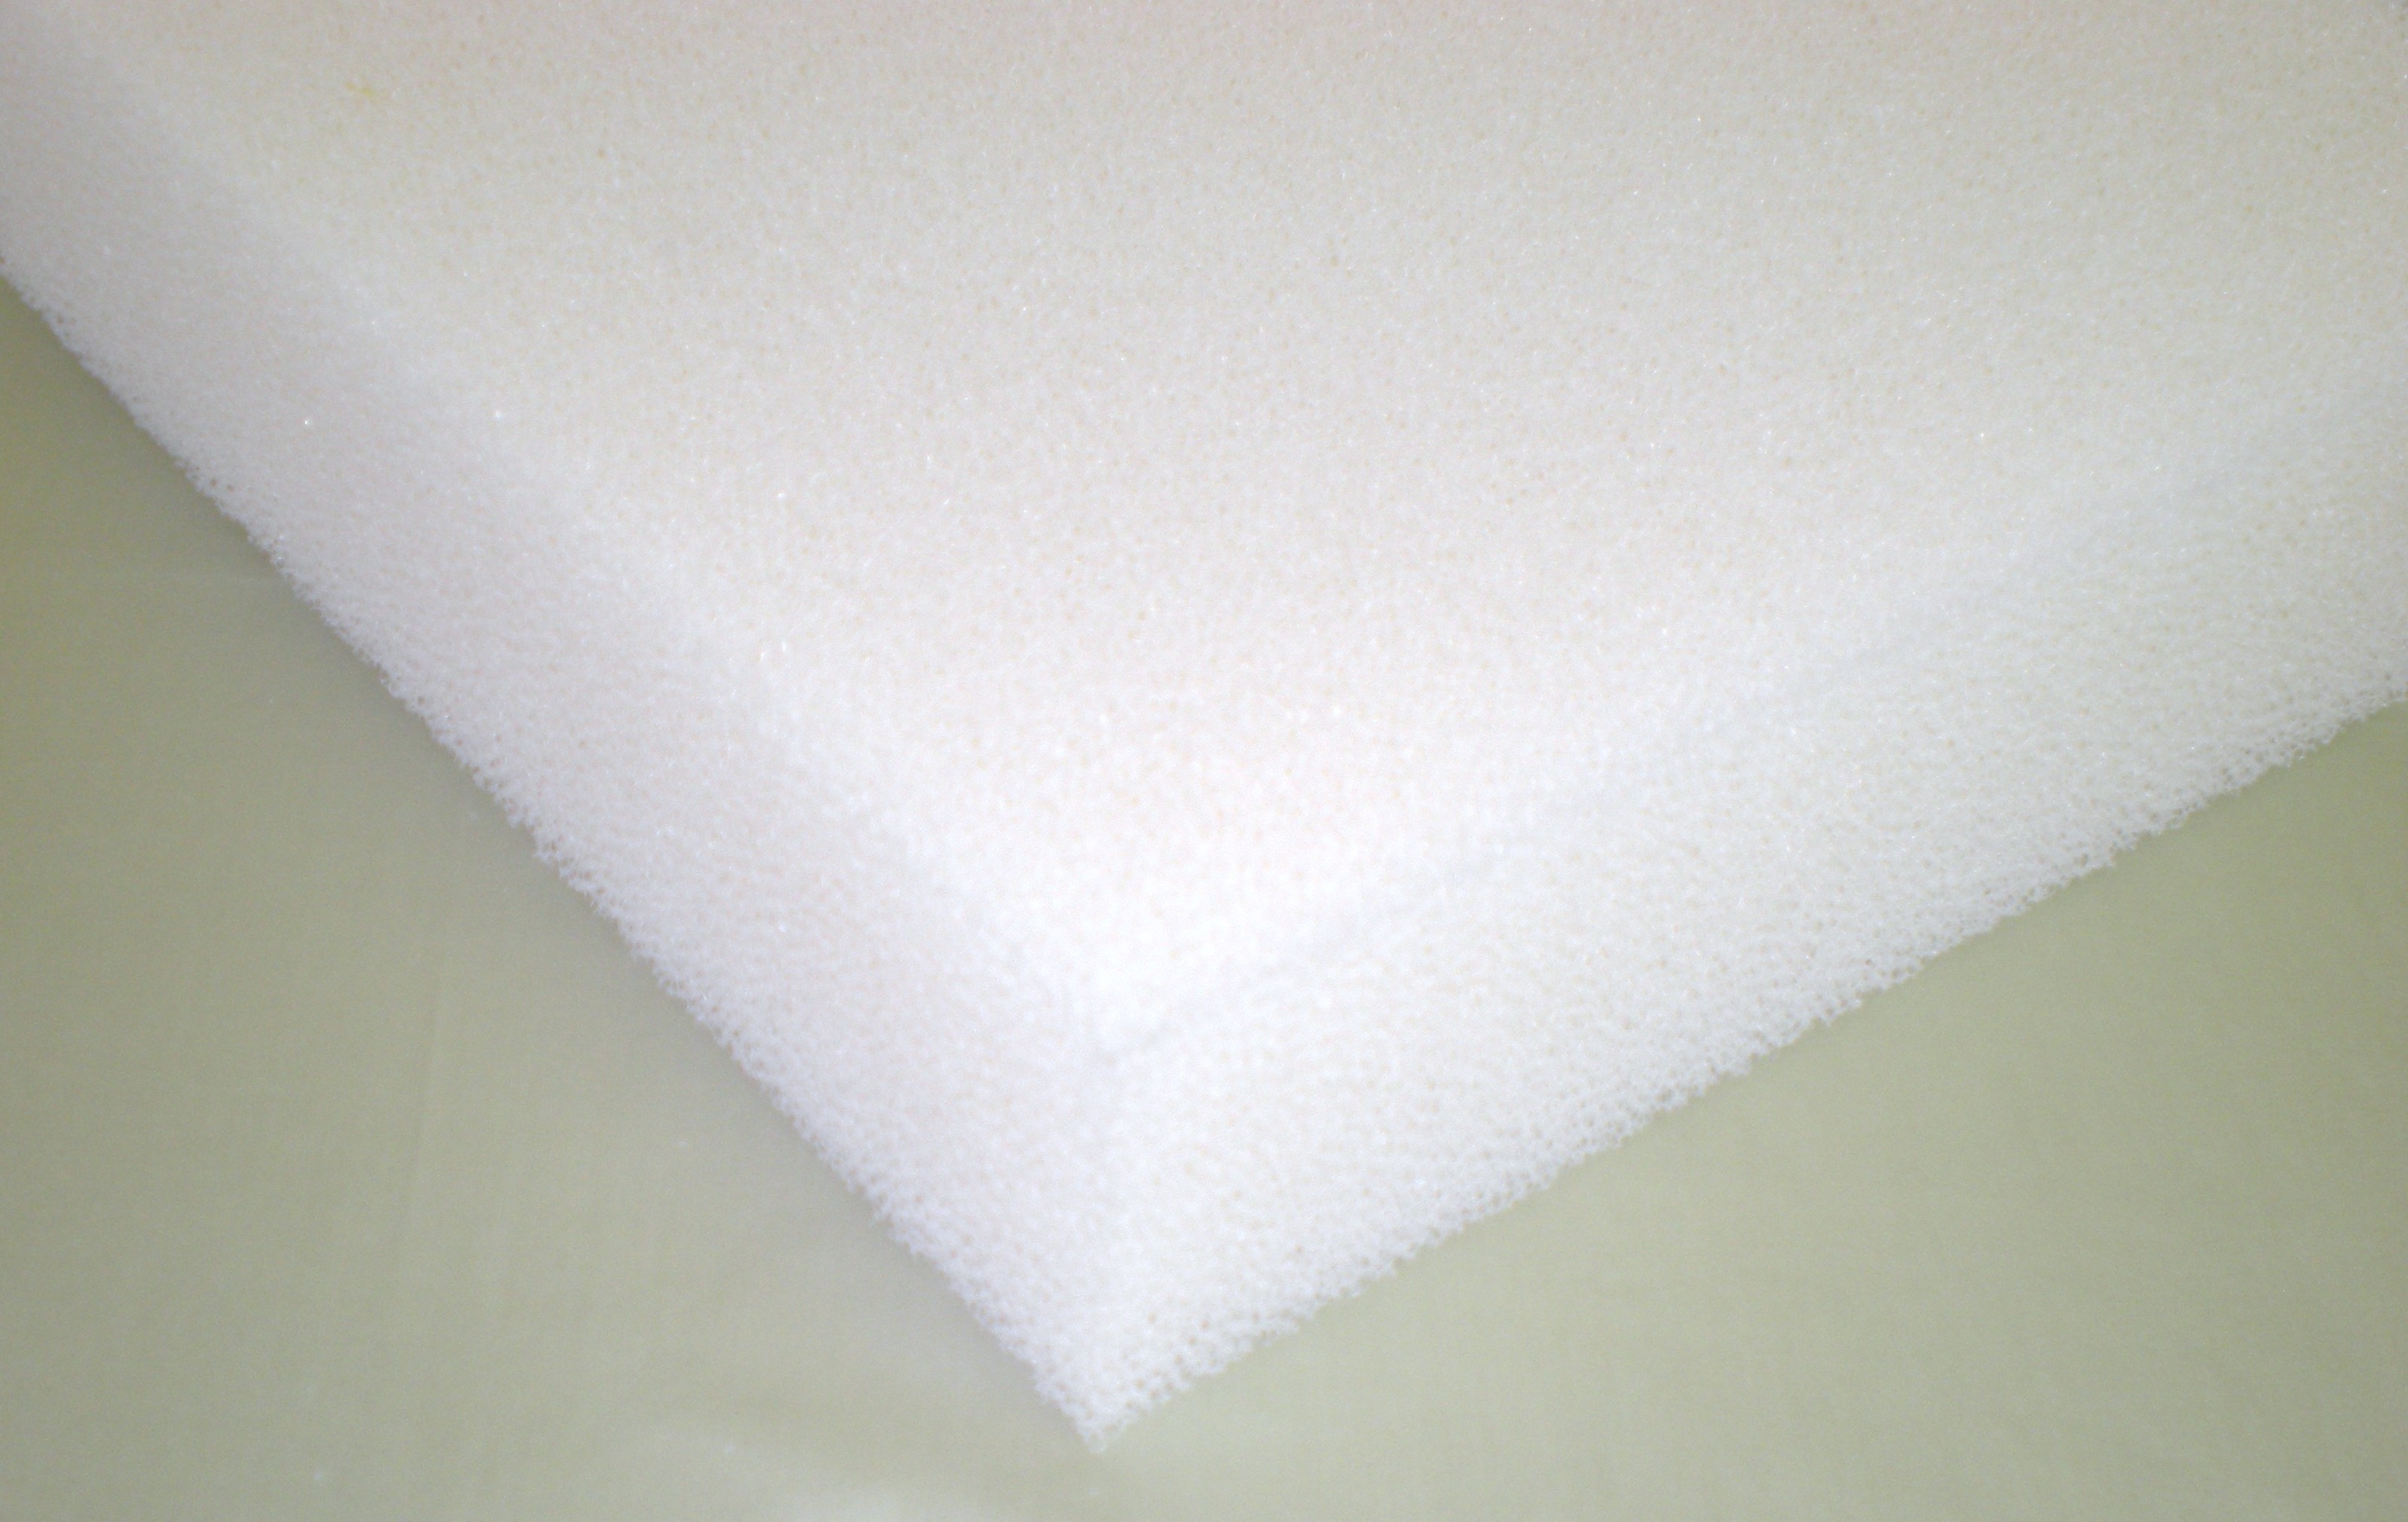 comfort foam supplies dry fast foam